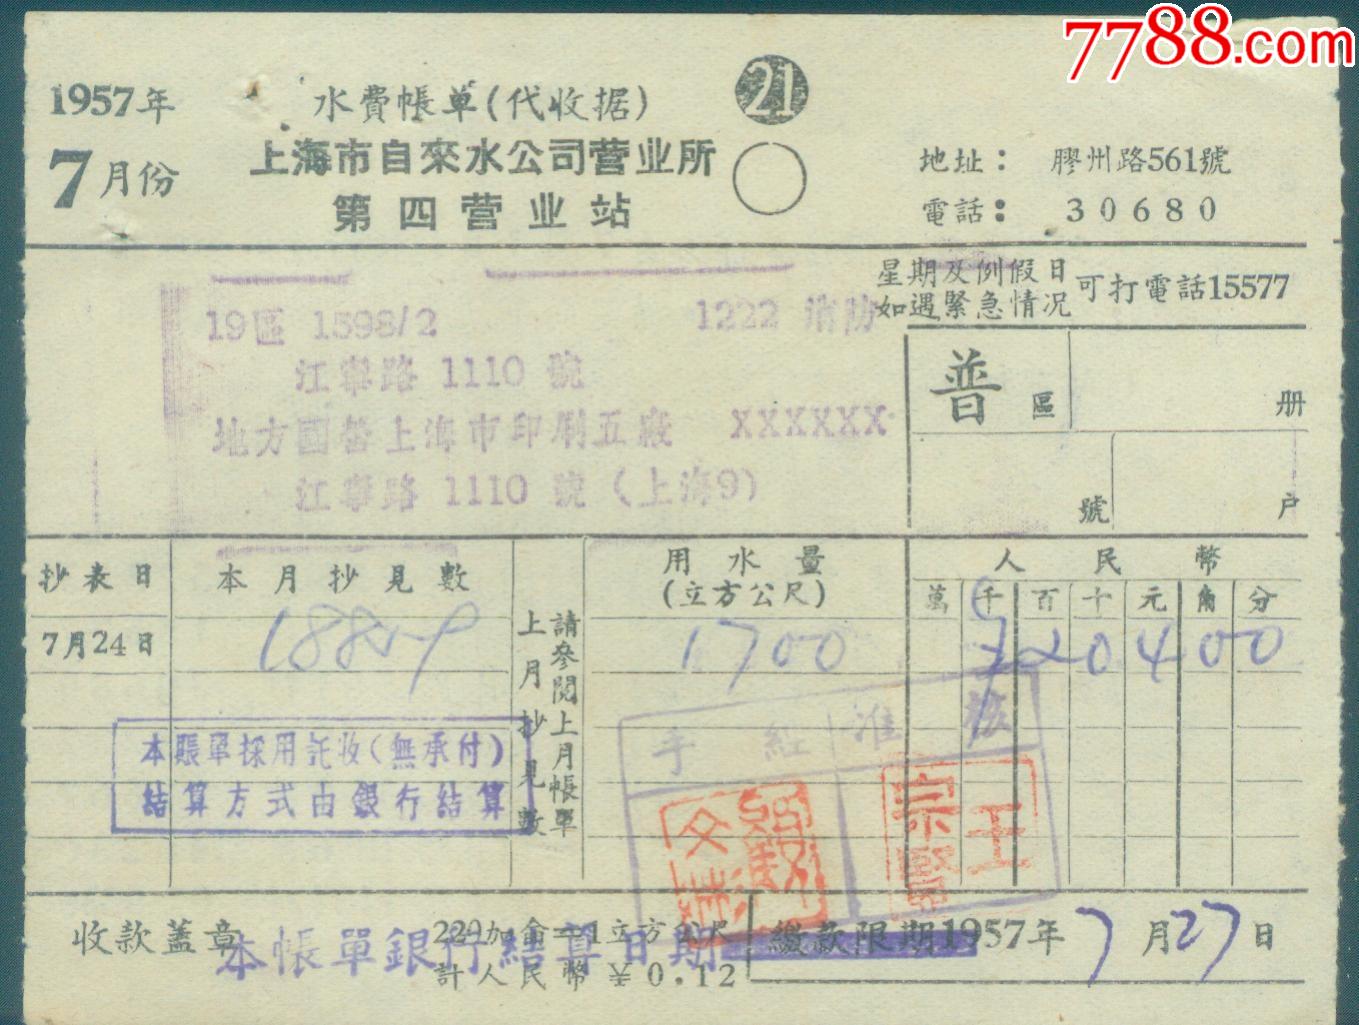 1957年7月上海市自来水公司营业所第一分所【水费账单】_发票_作品